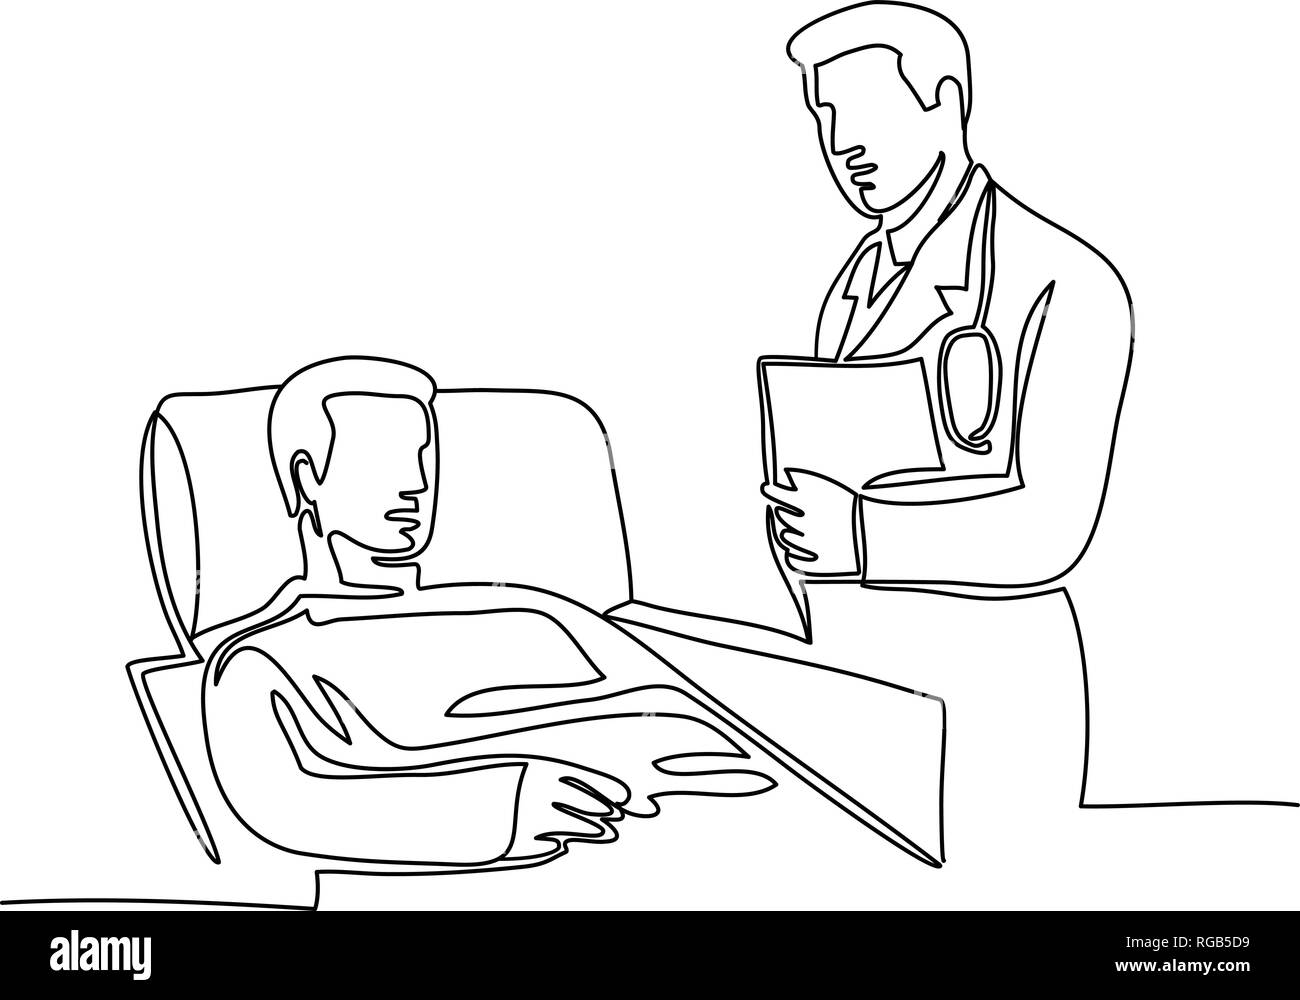 Ligne continue illustration de médecin, chirurgien ou médecin avec patient sur lit d'hôpital fait dans le style de produit unique en noir et blanc. Illustration de Vecteur